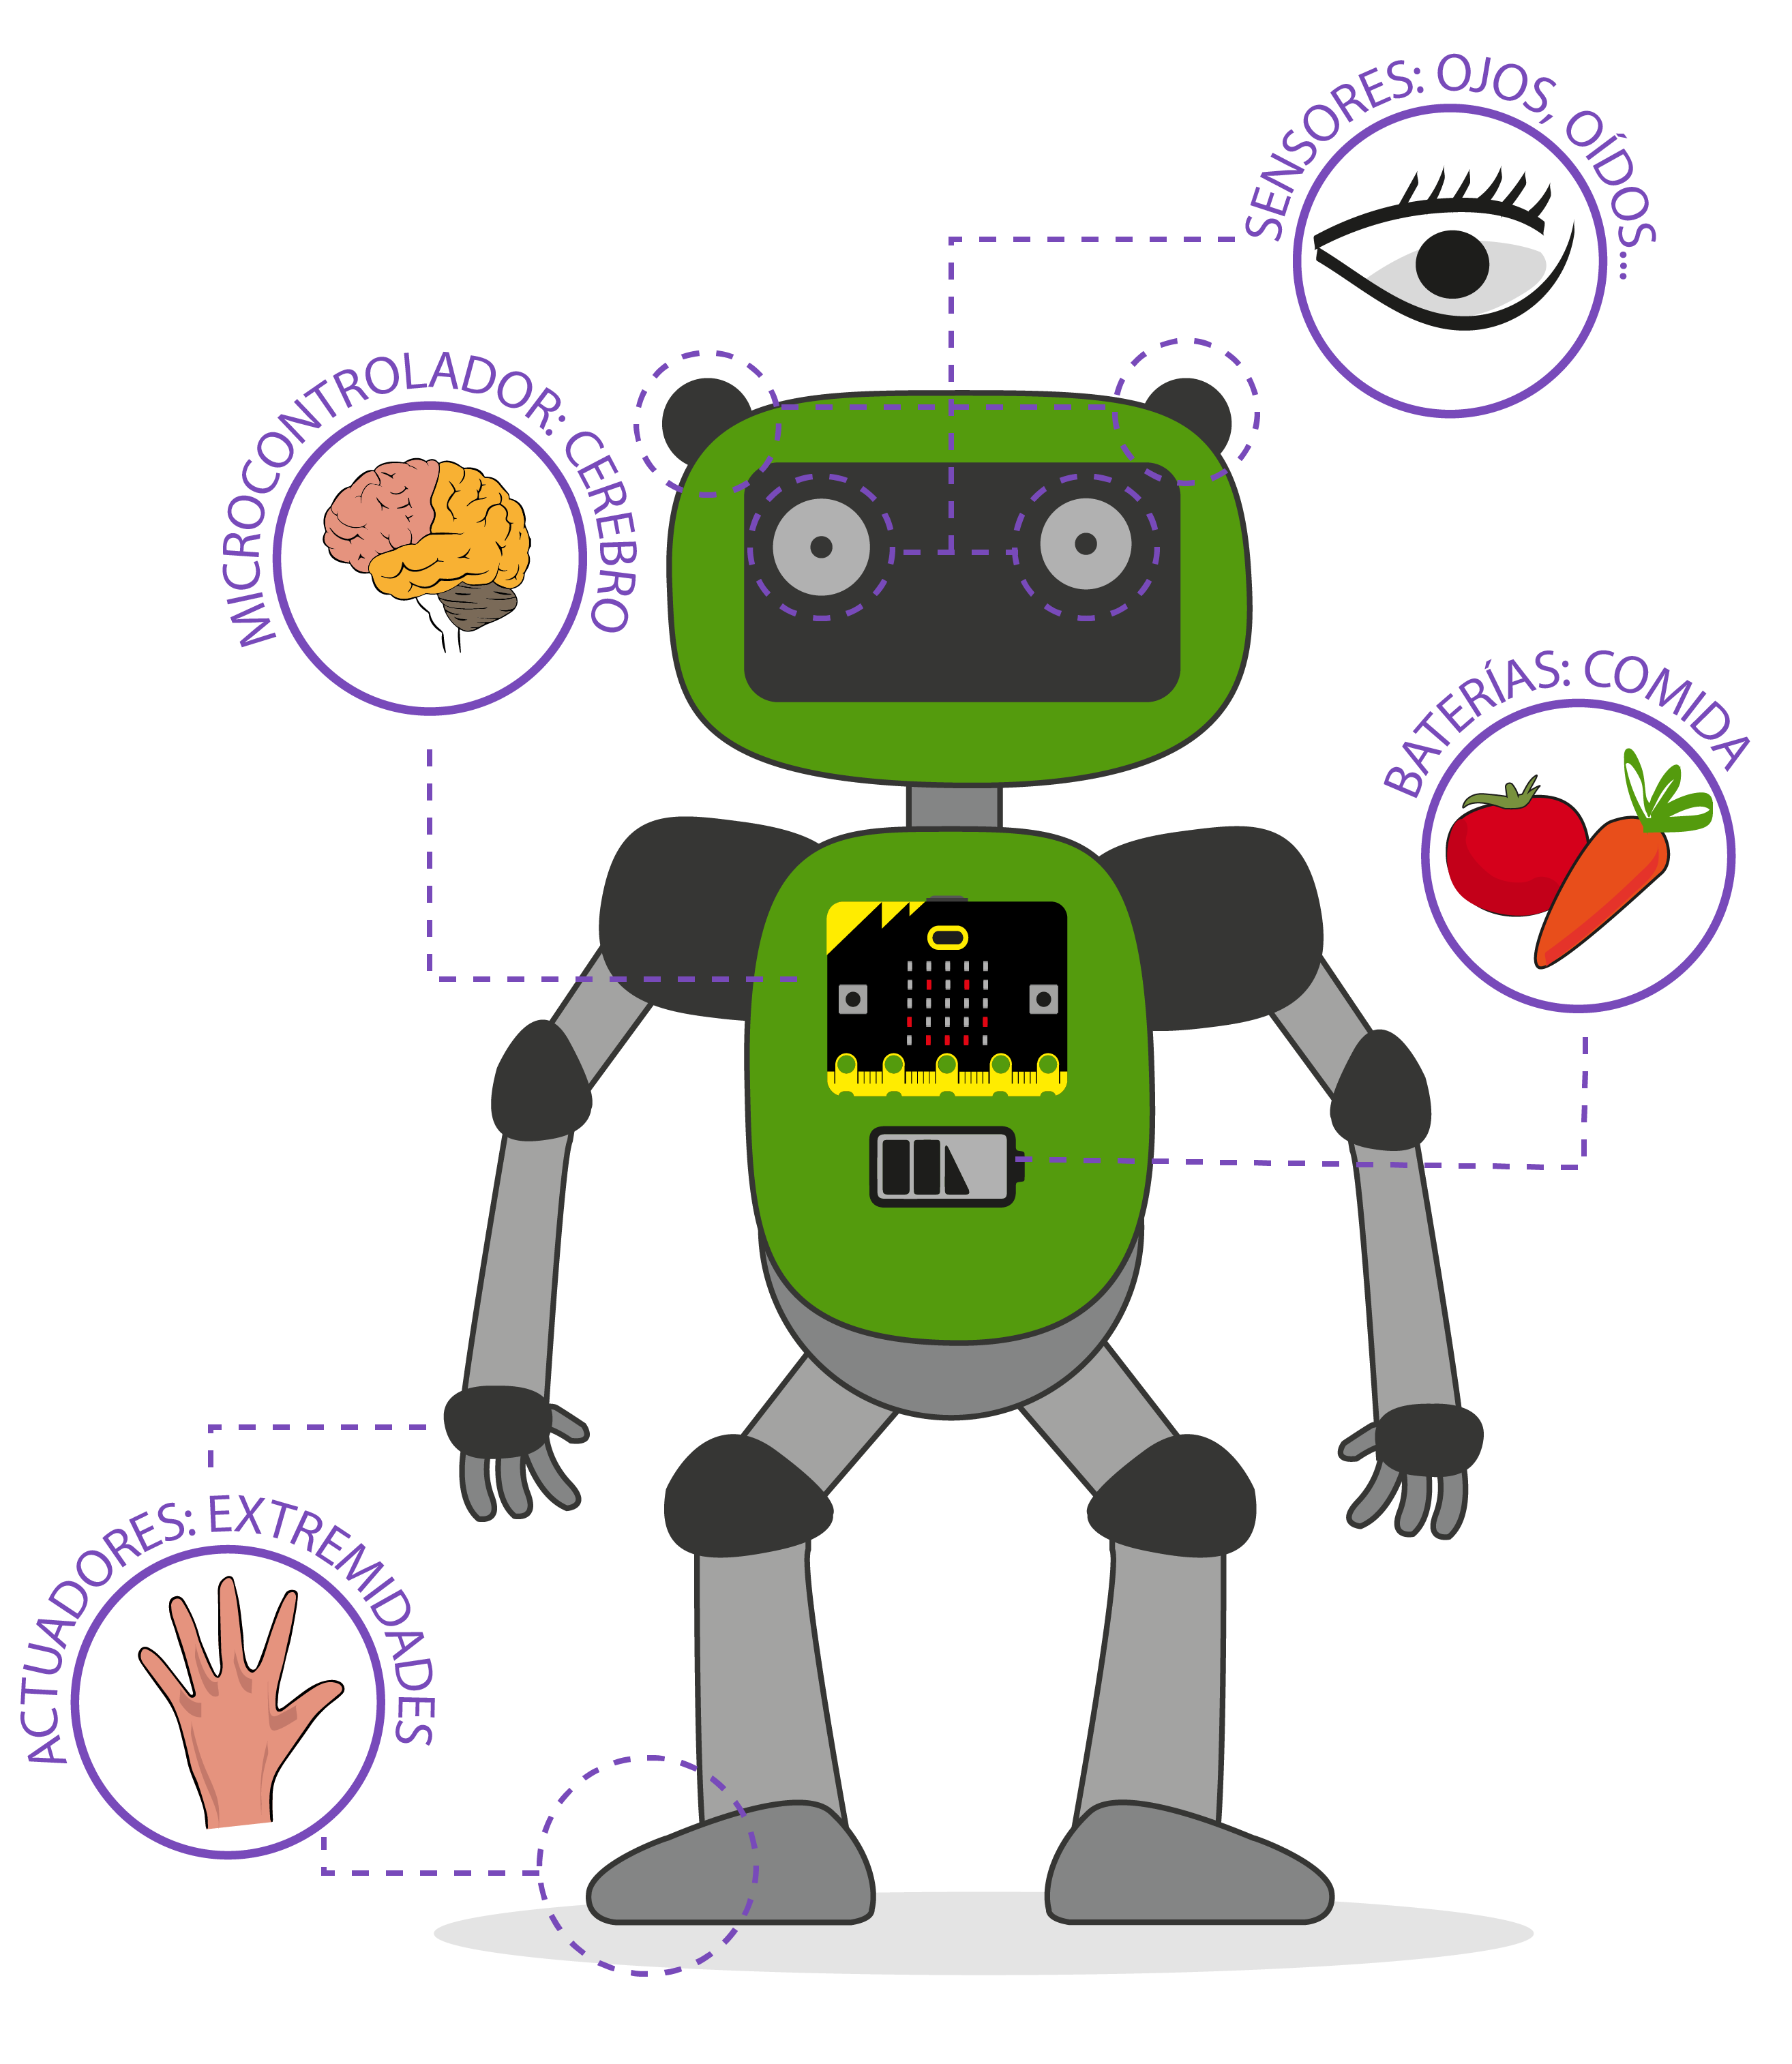 Analogía entre los humanos y los robots con el sistema de relación humano en un robot.